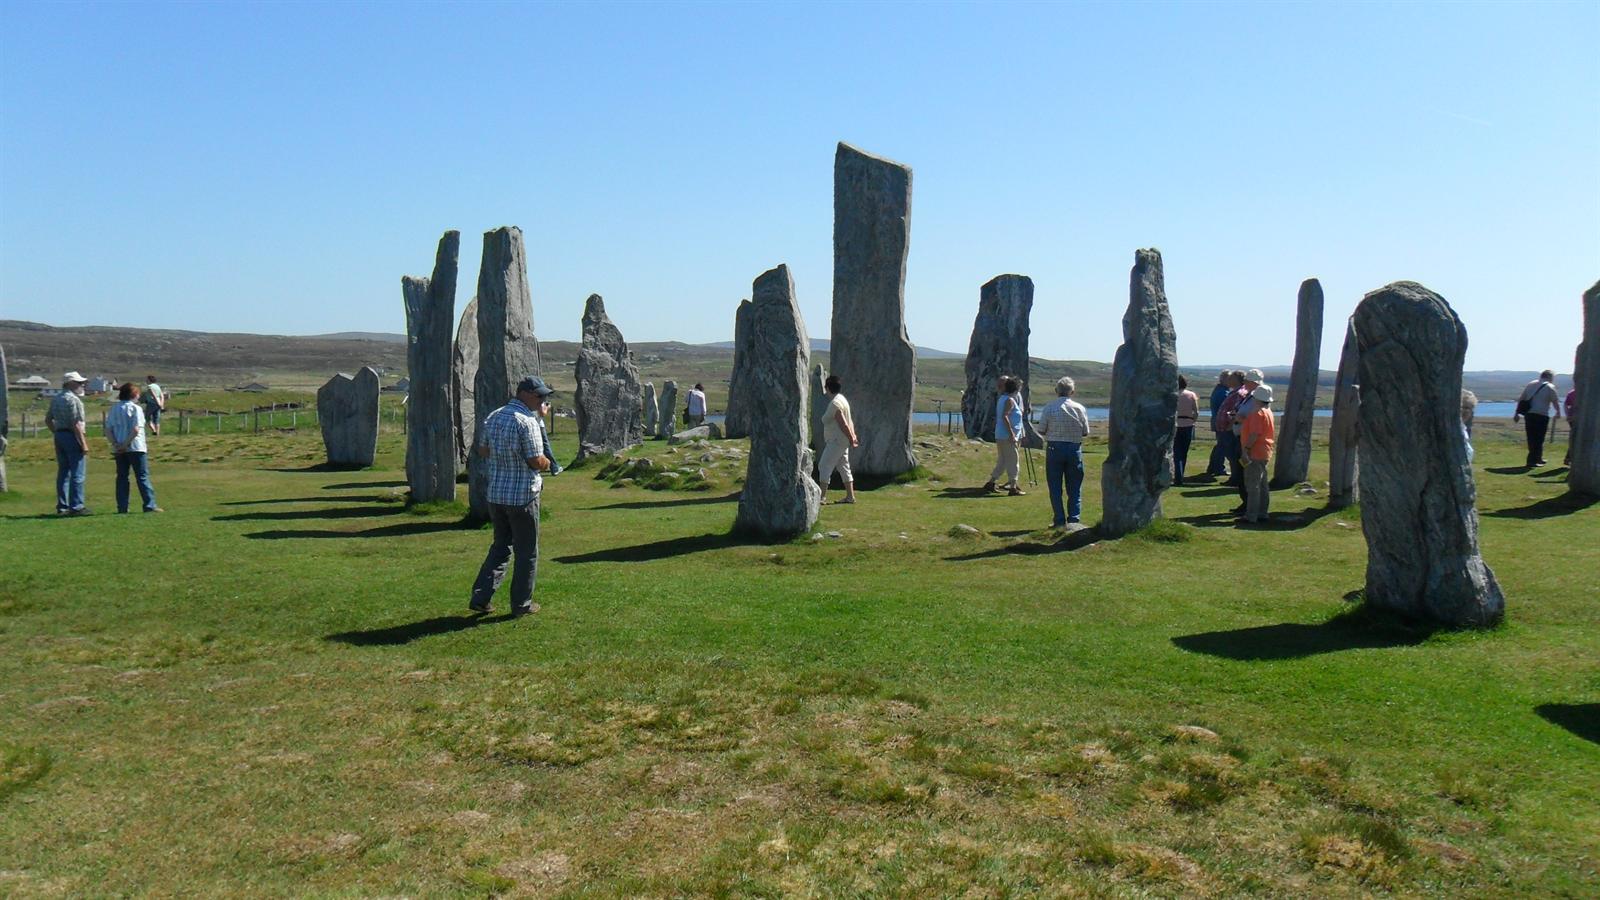 https://www.eberhardt-travel.de/reisebilder/reisetipp/standing-stones-of-callanish-schottlands-stonehenge/original/305713